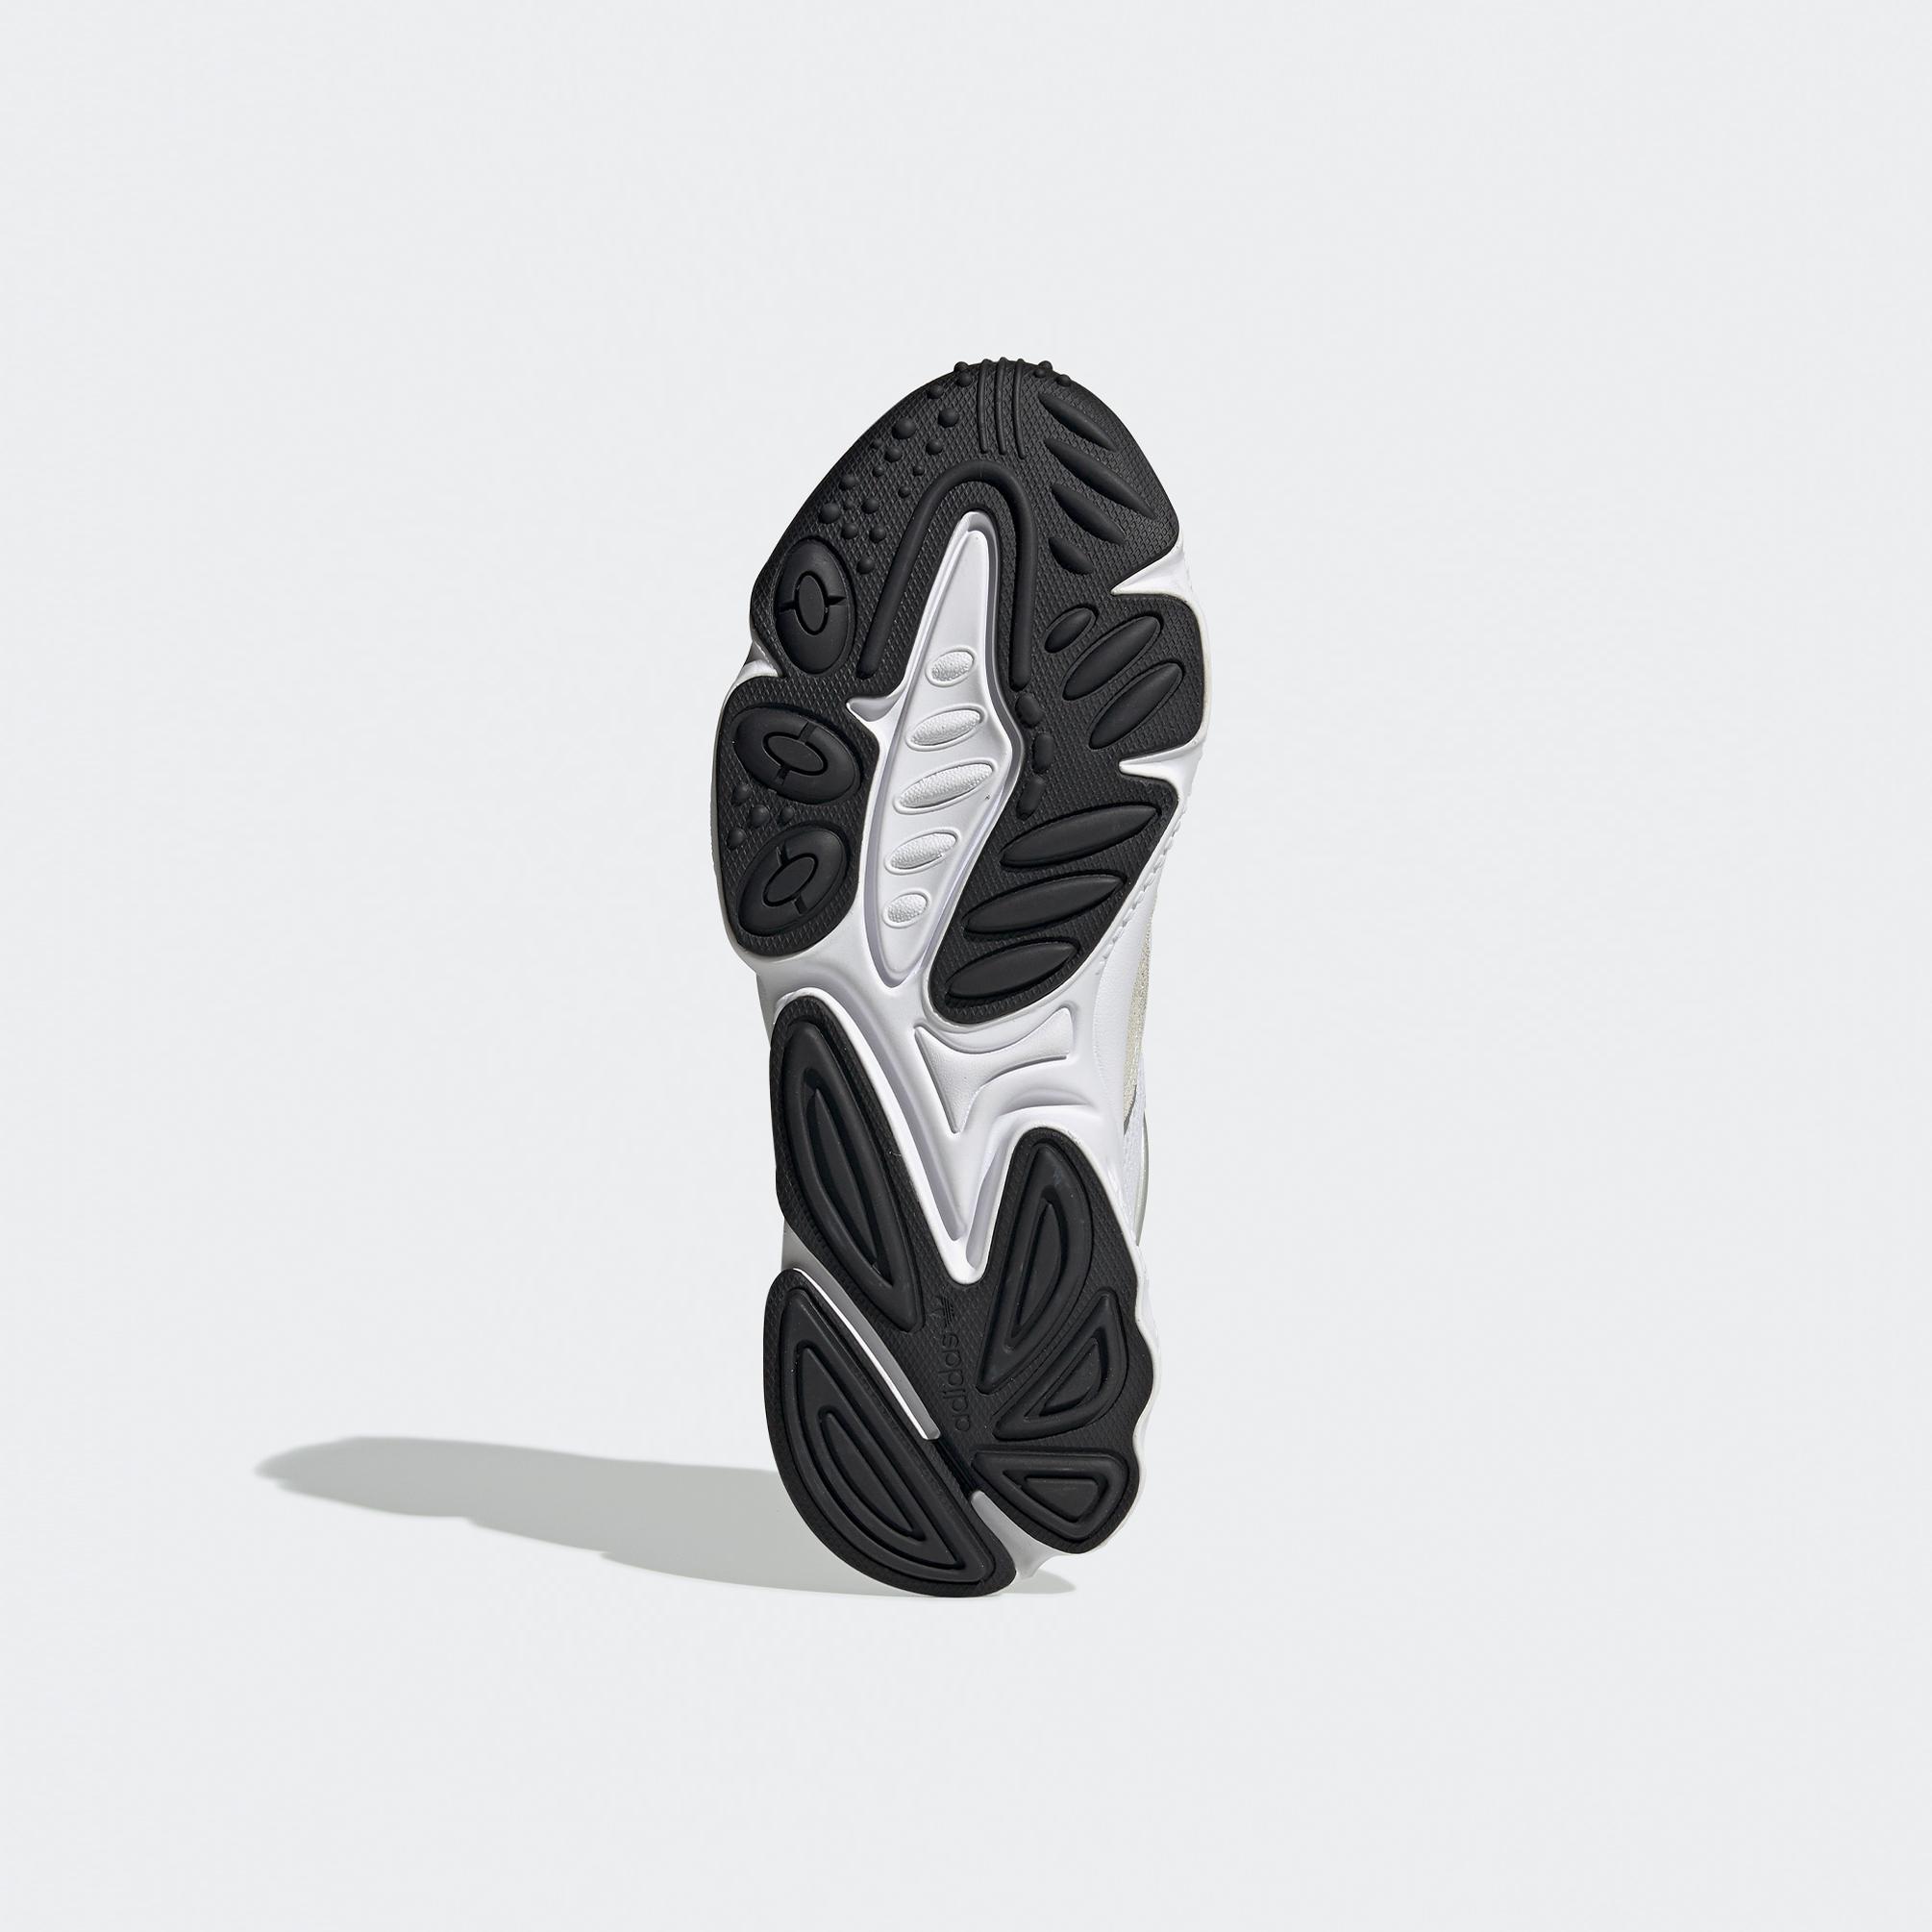  adidas Ozweego Unisex Beyaz Spor Ayakkabı